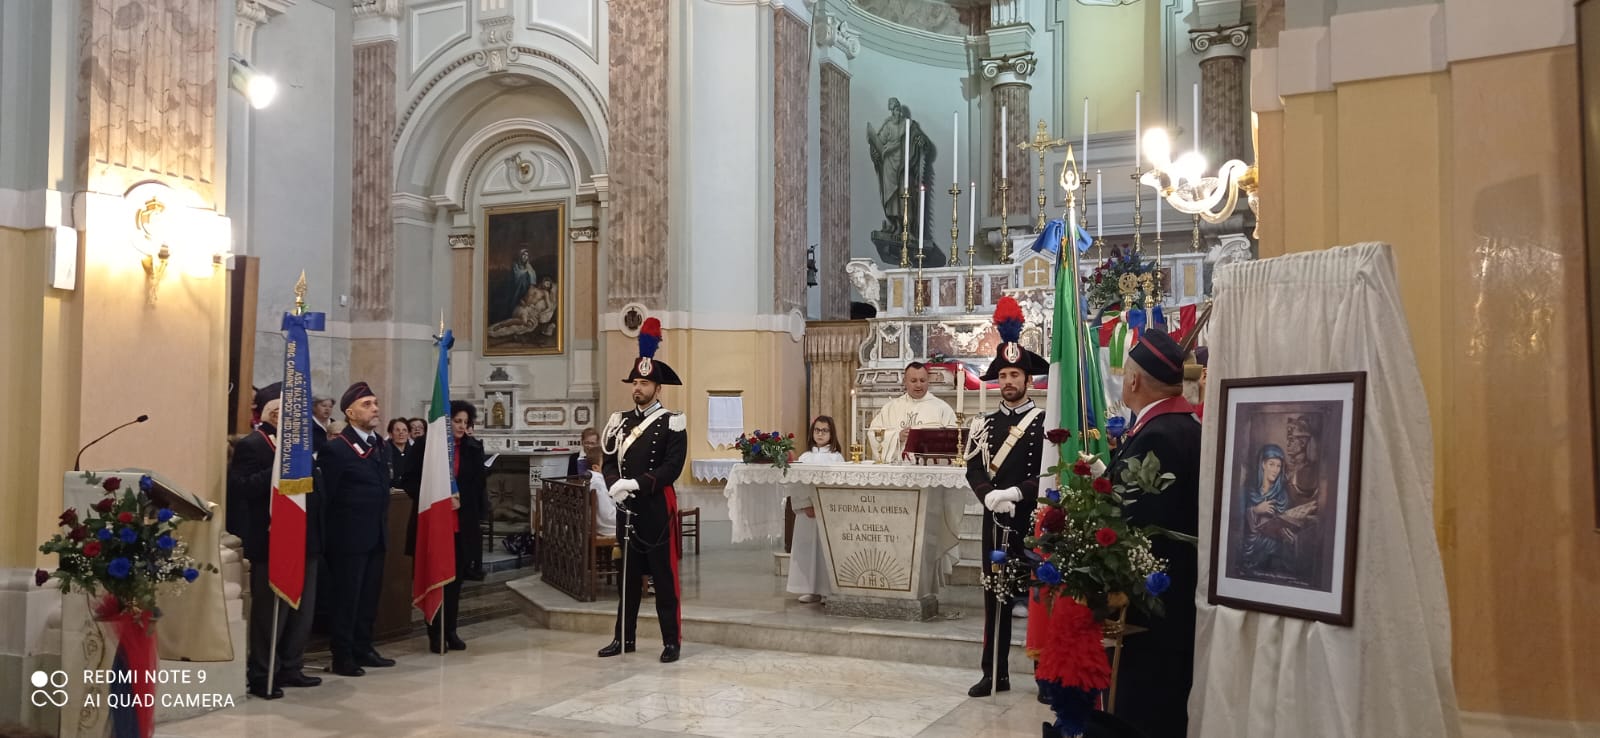 Il Comando Provinciale di Salerno celebra la Virgo Fidelis, protettrice dell’arma dei carabinieri